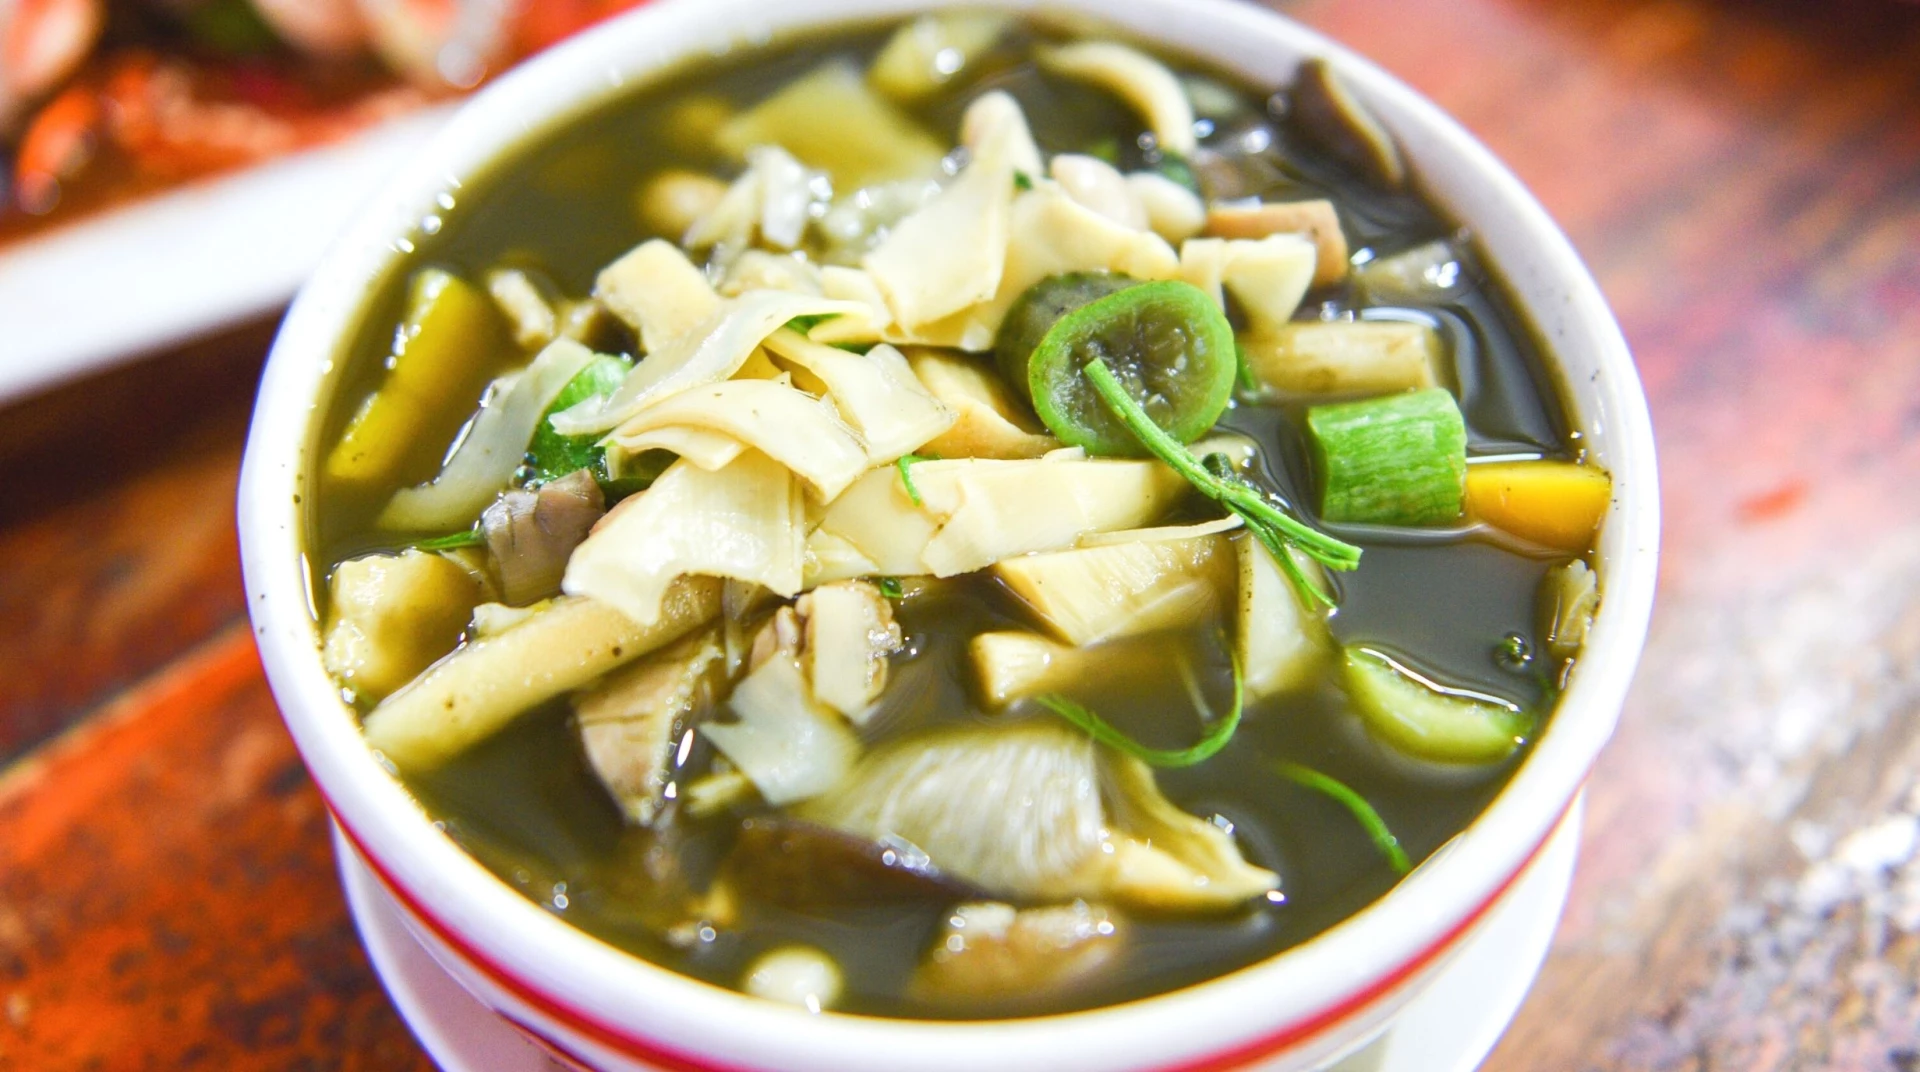 แกงหน่อไม้: การเตรียมอาหารแบบไทยที่อร่อยและเพื่อสุขภาพ | Makara Restaurant